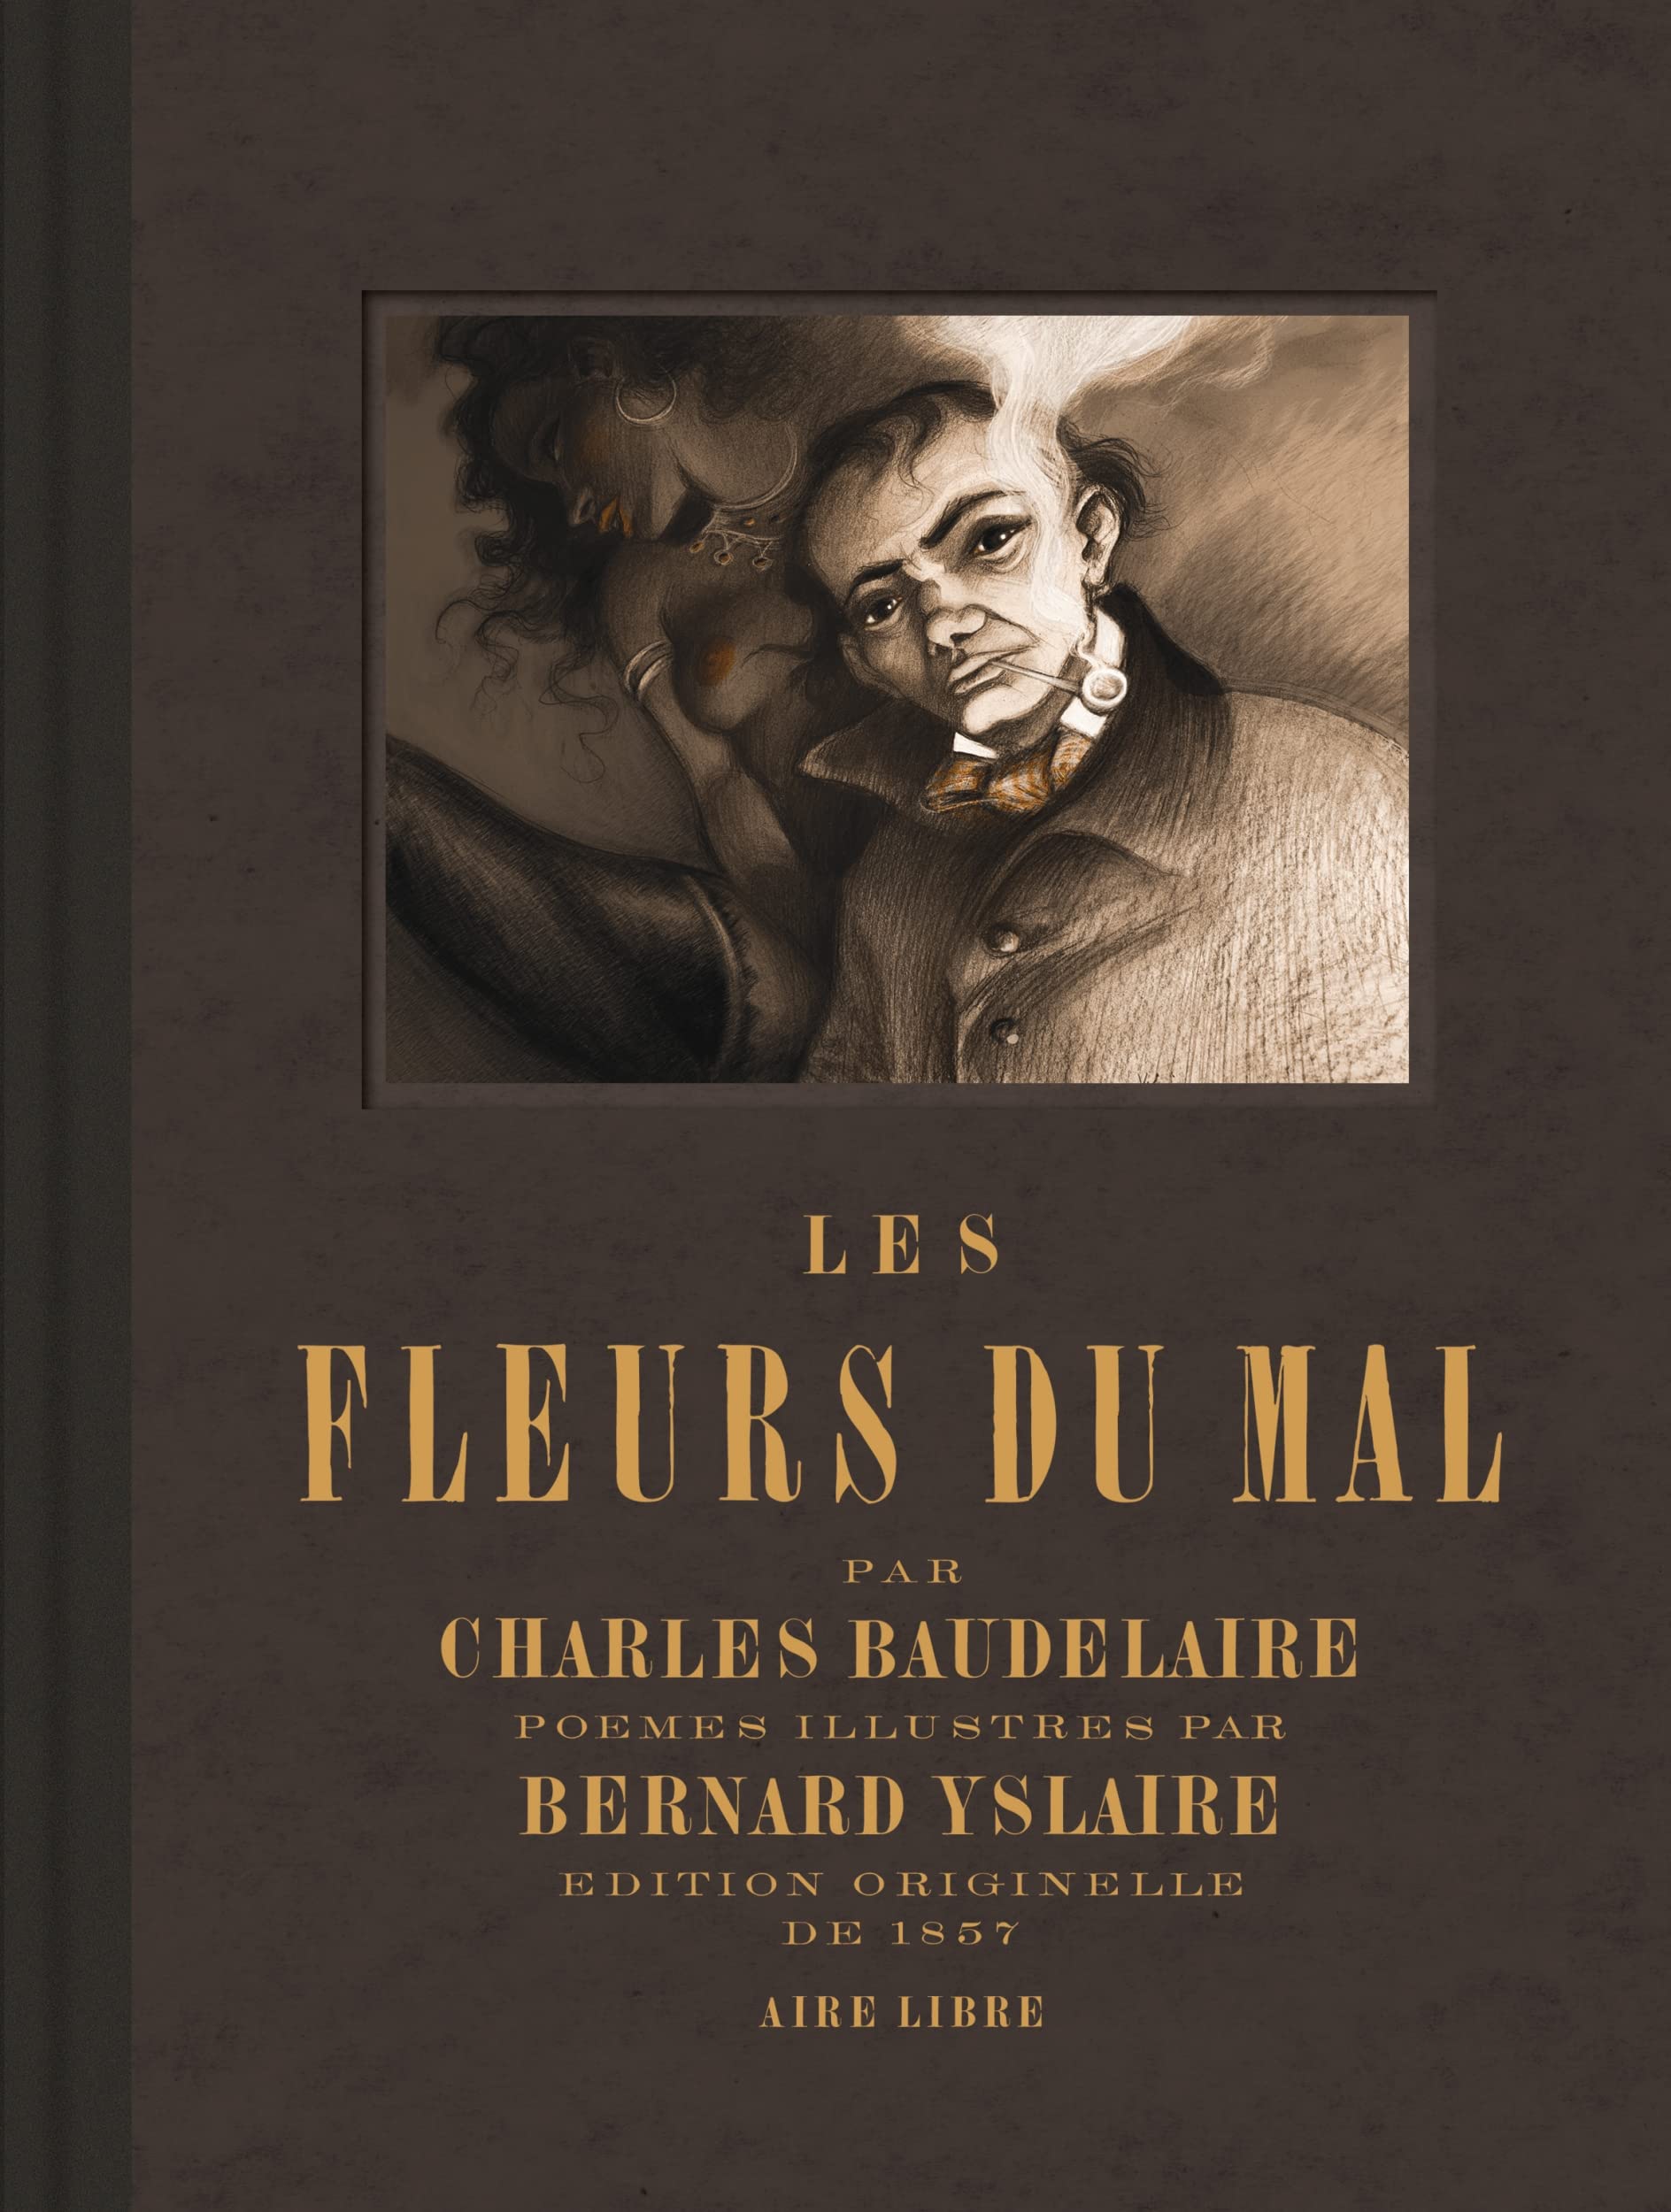 Les Fleurs du mal – Par Charles Baudelaire – illuminé par Bernard Yslaire – Dupuis Aire Libre